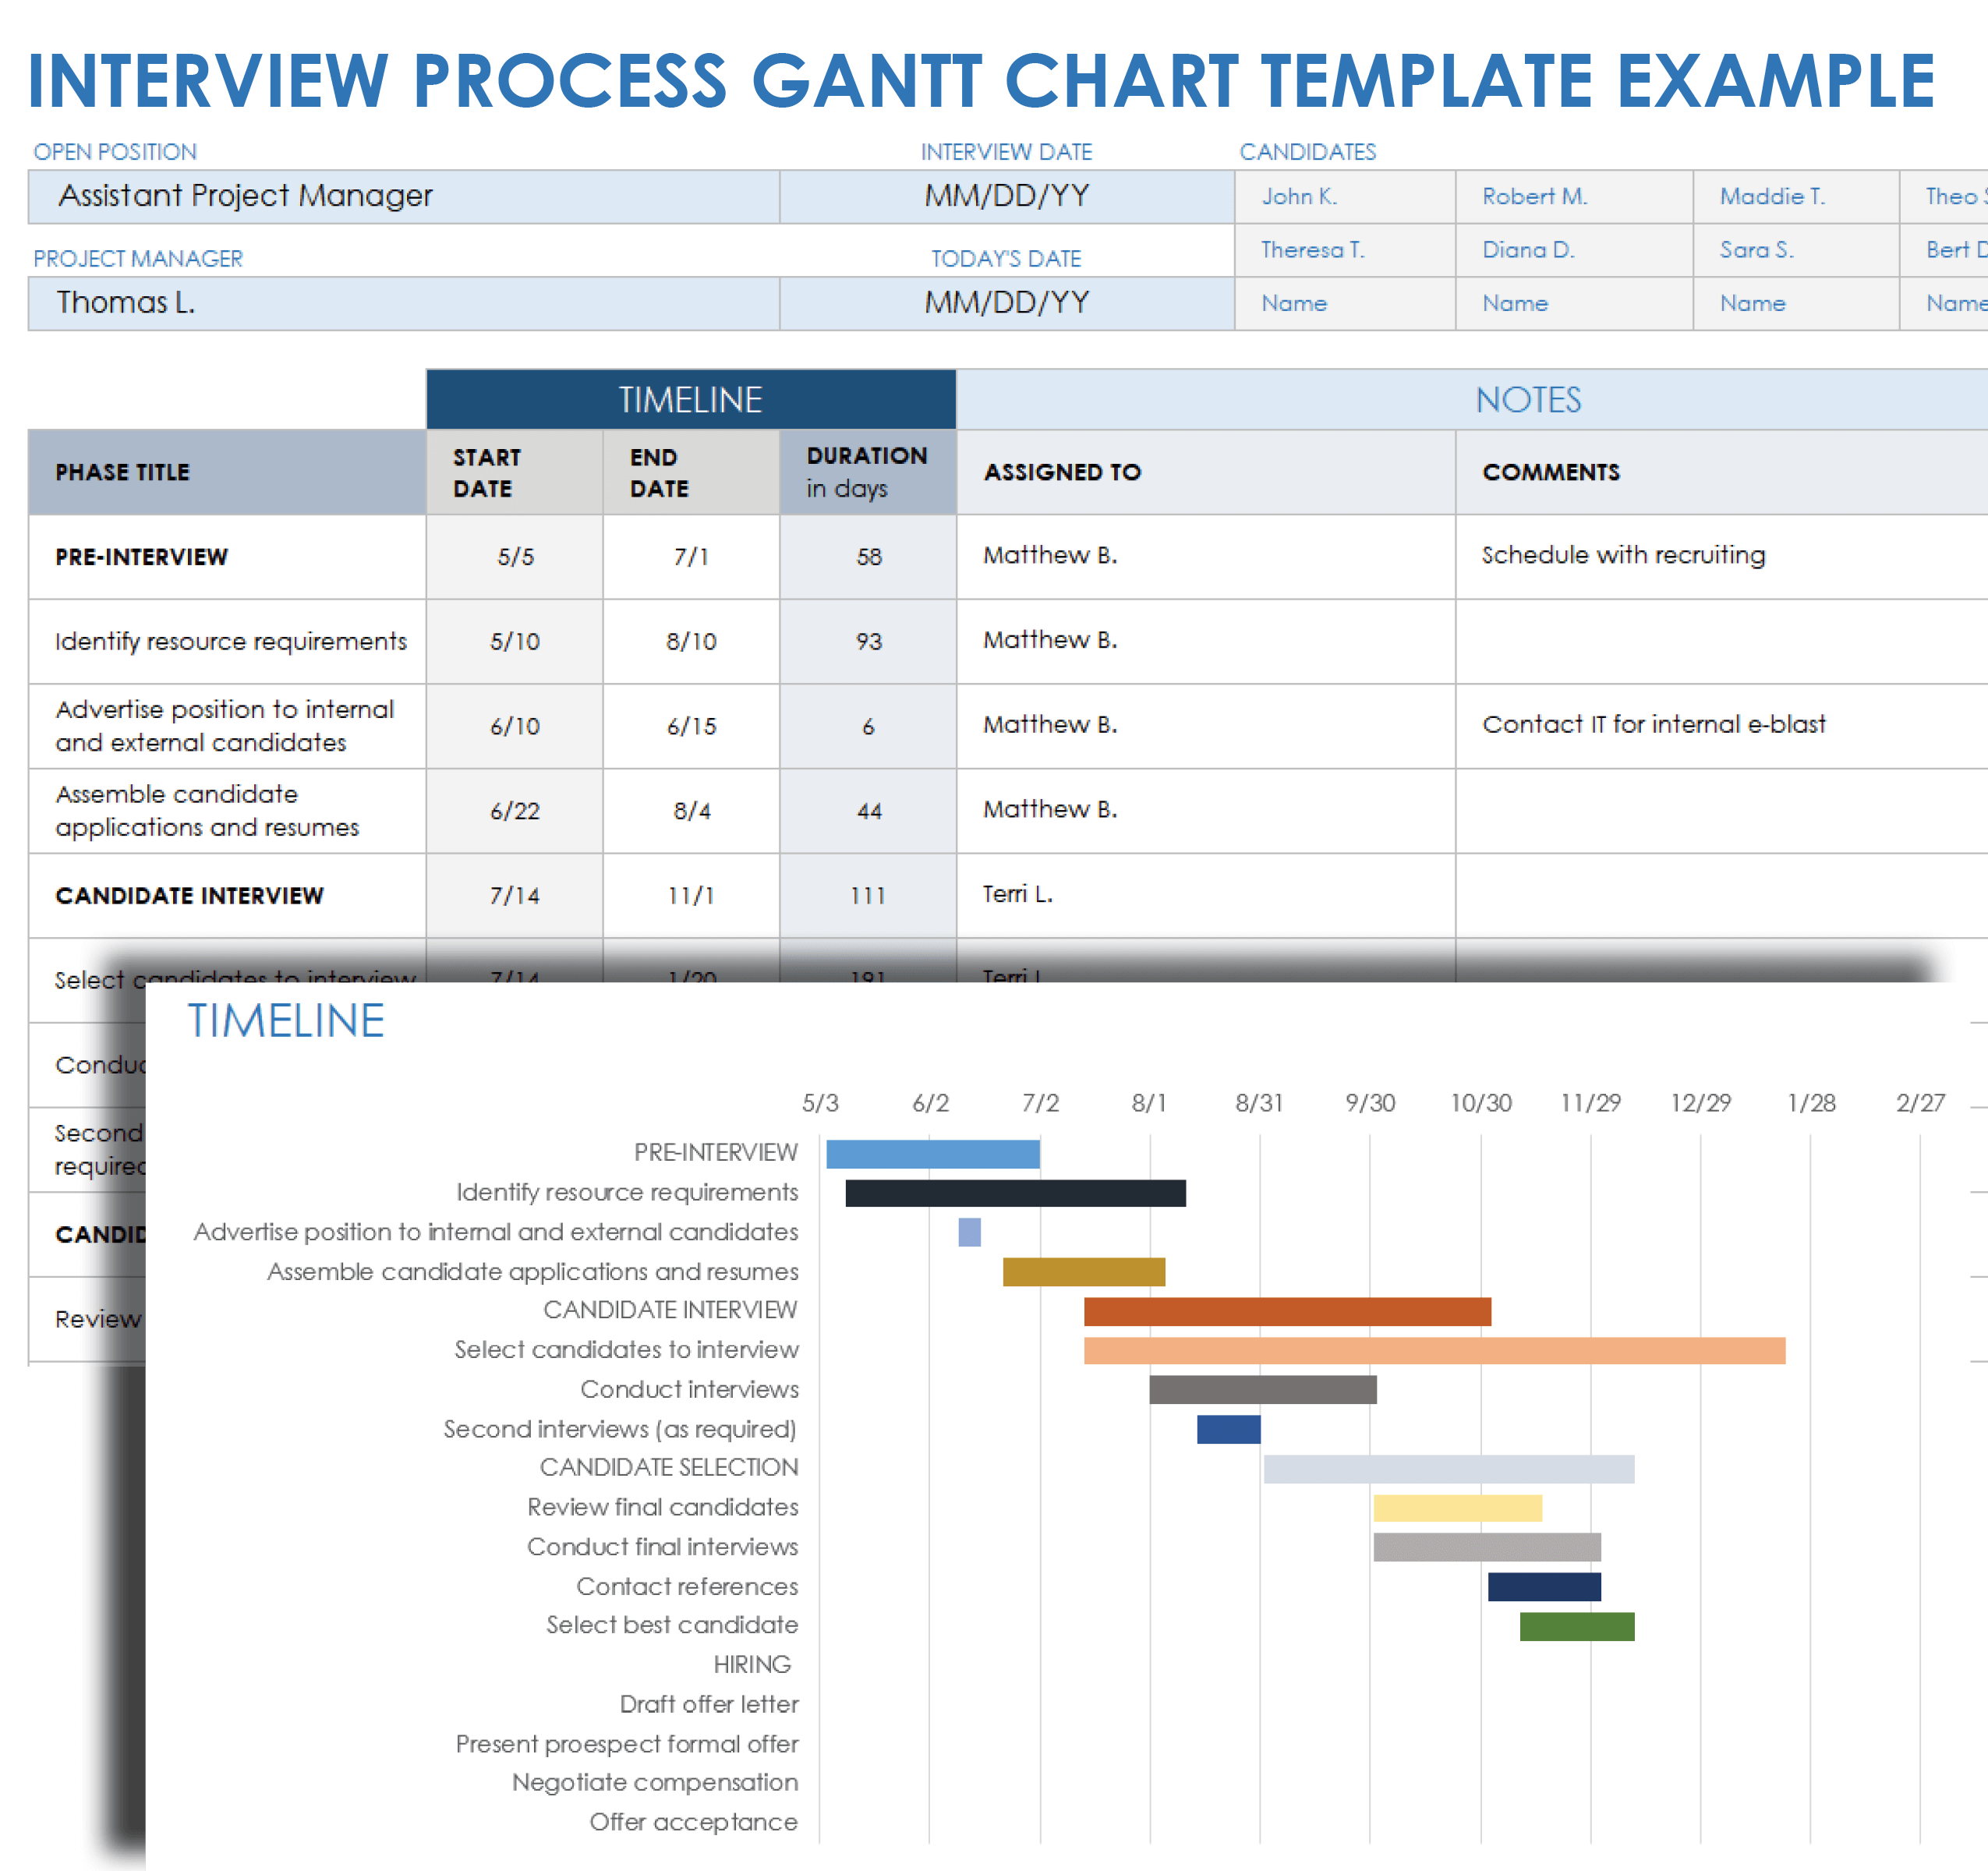 Interview Process Gantt Chart Template Example